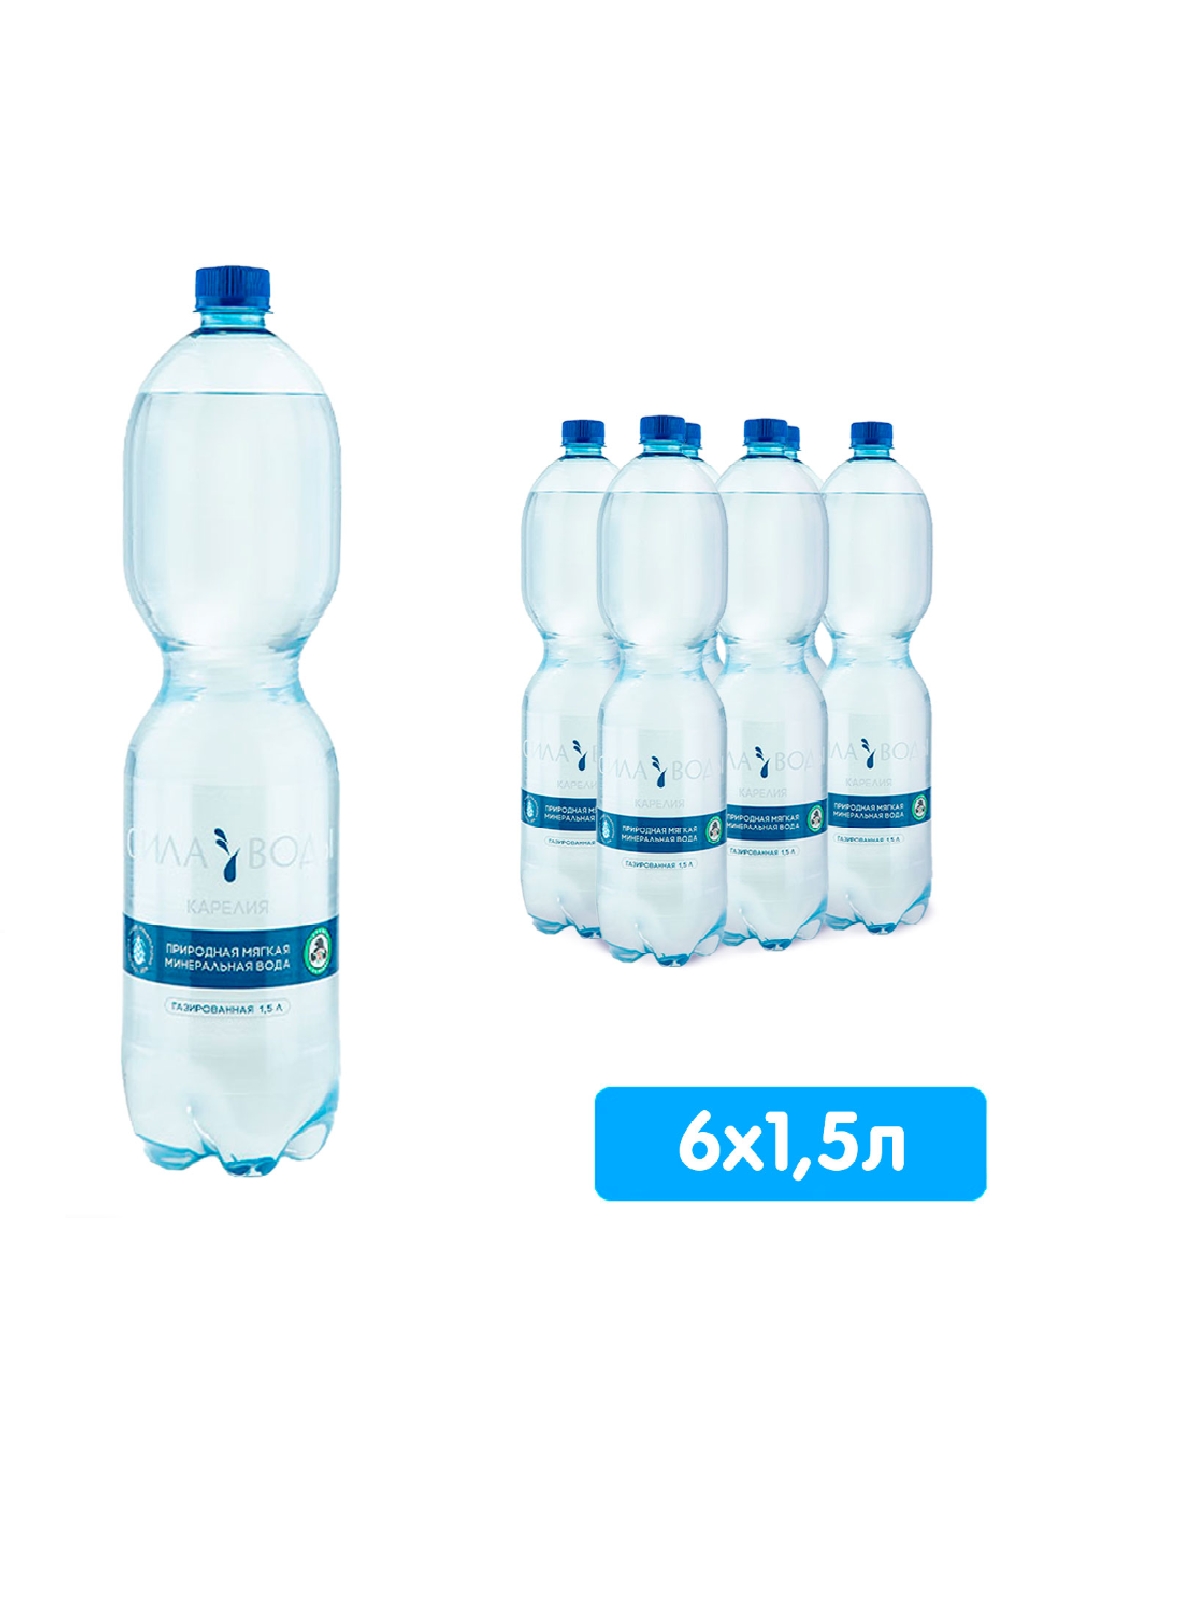 Вода питьевая Сила воды Карелия 6 шт по 1,5 л, газированная, Пэт